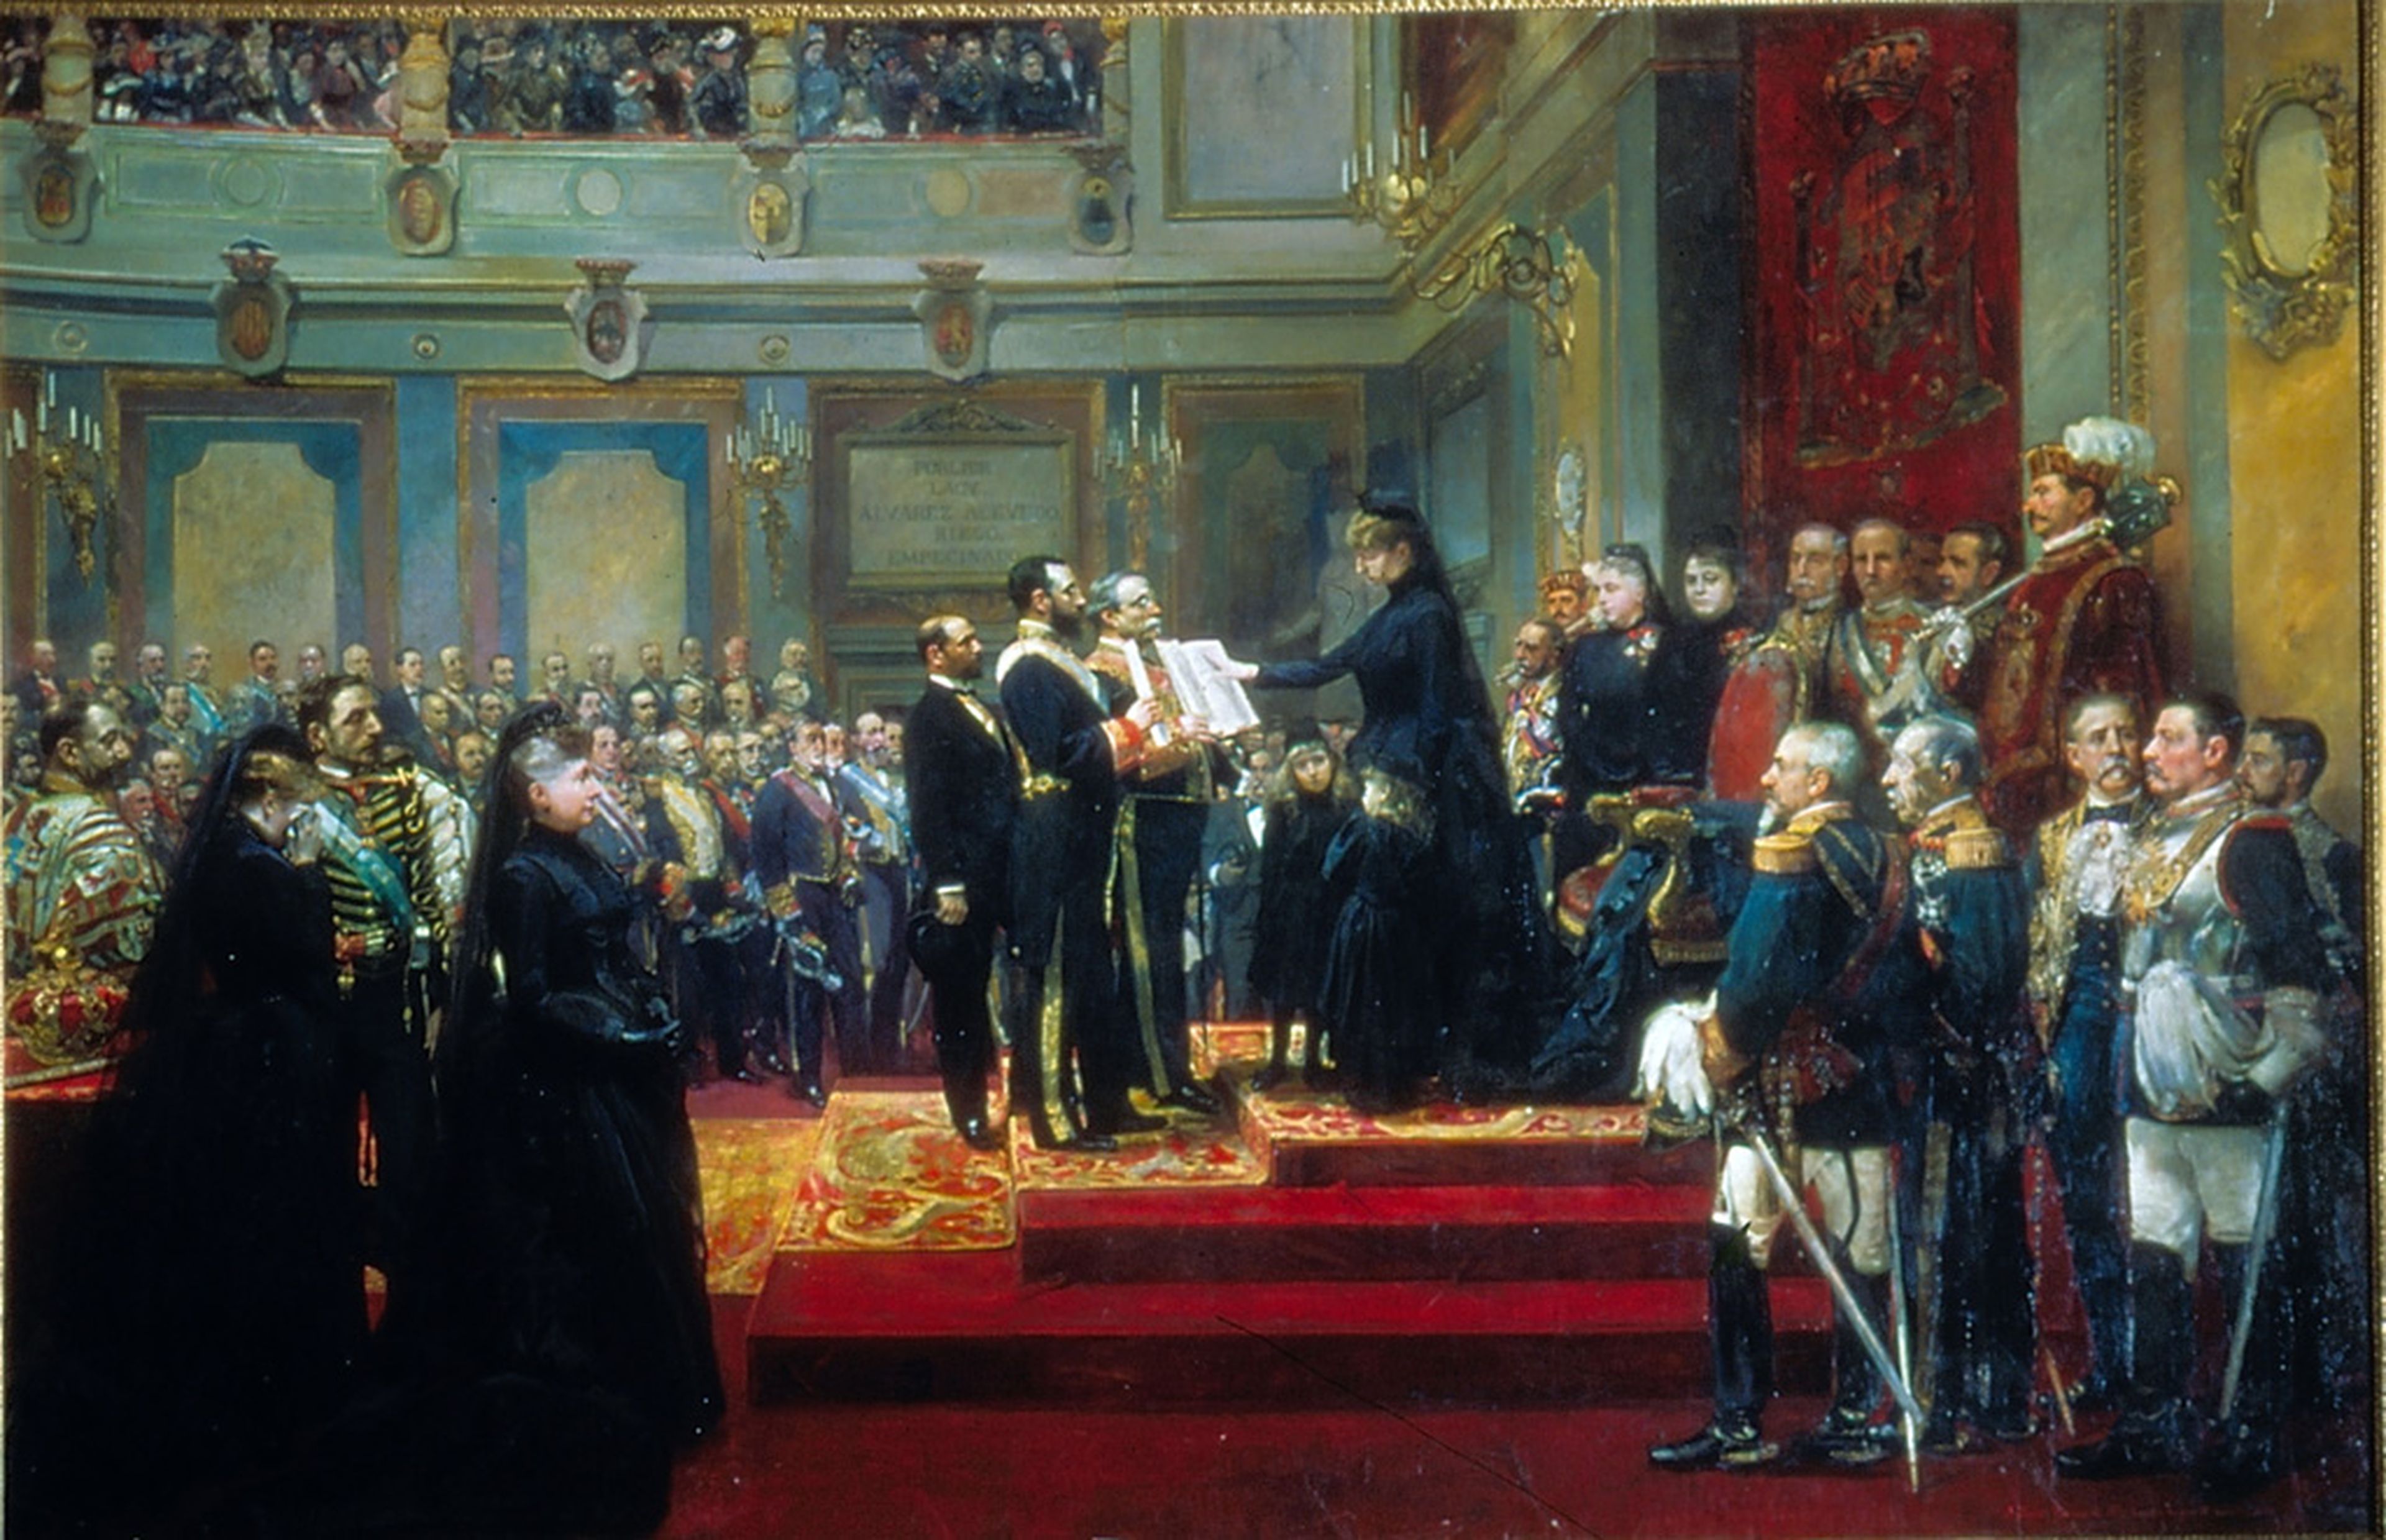 La jura de la Constitución de la regente María Cristina de Habsburgo en diciembre de 1885, reflejada en este cuadro de Francisco Jover y Joaquín Sorolla.